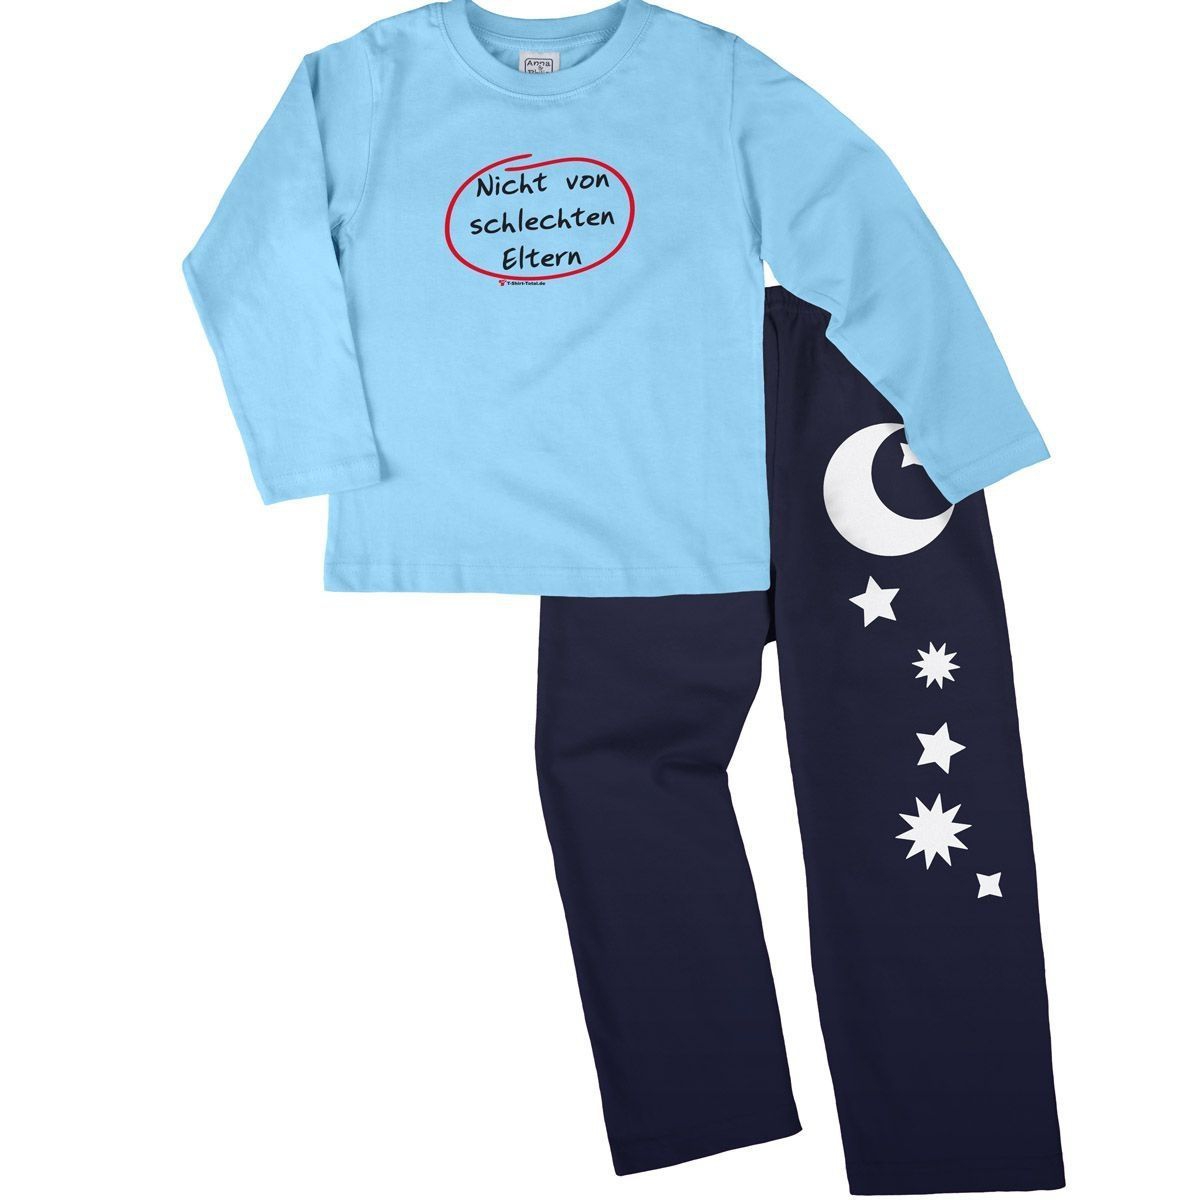 Nicht von schlechten Eltern Pyjama Set hellblau / navy 110 / 116